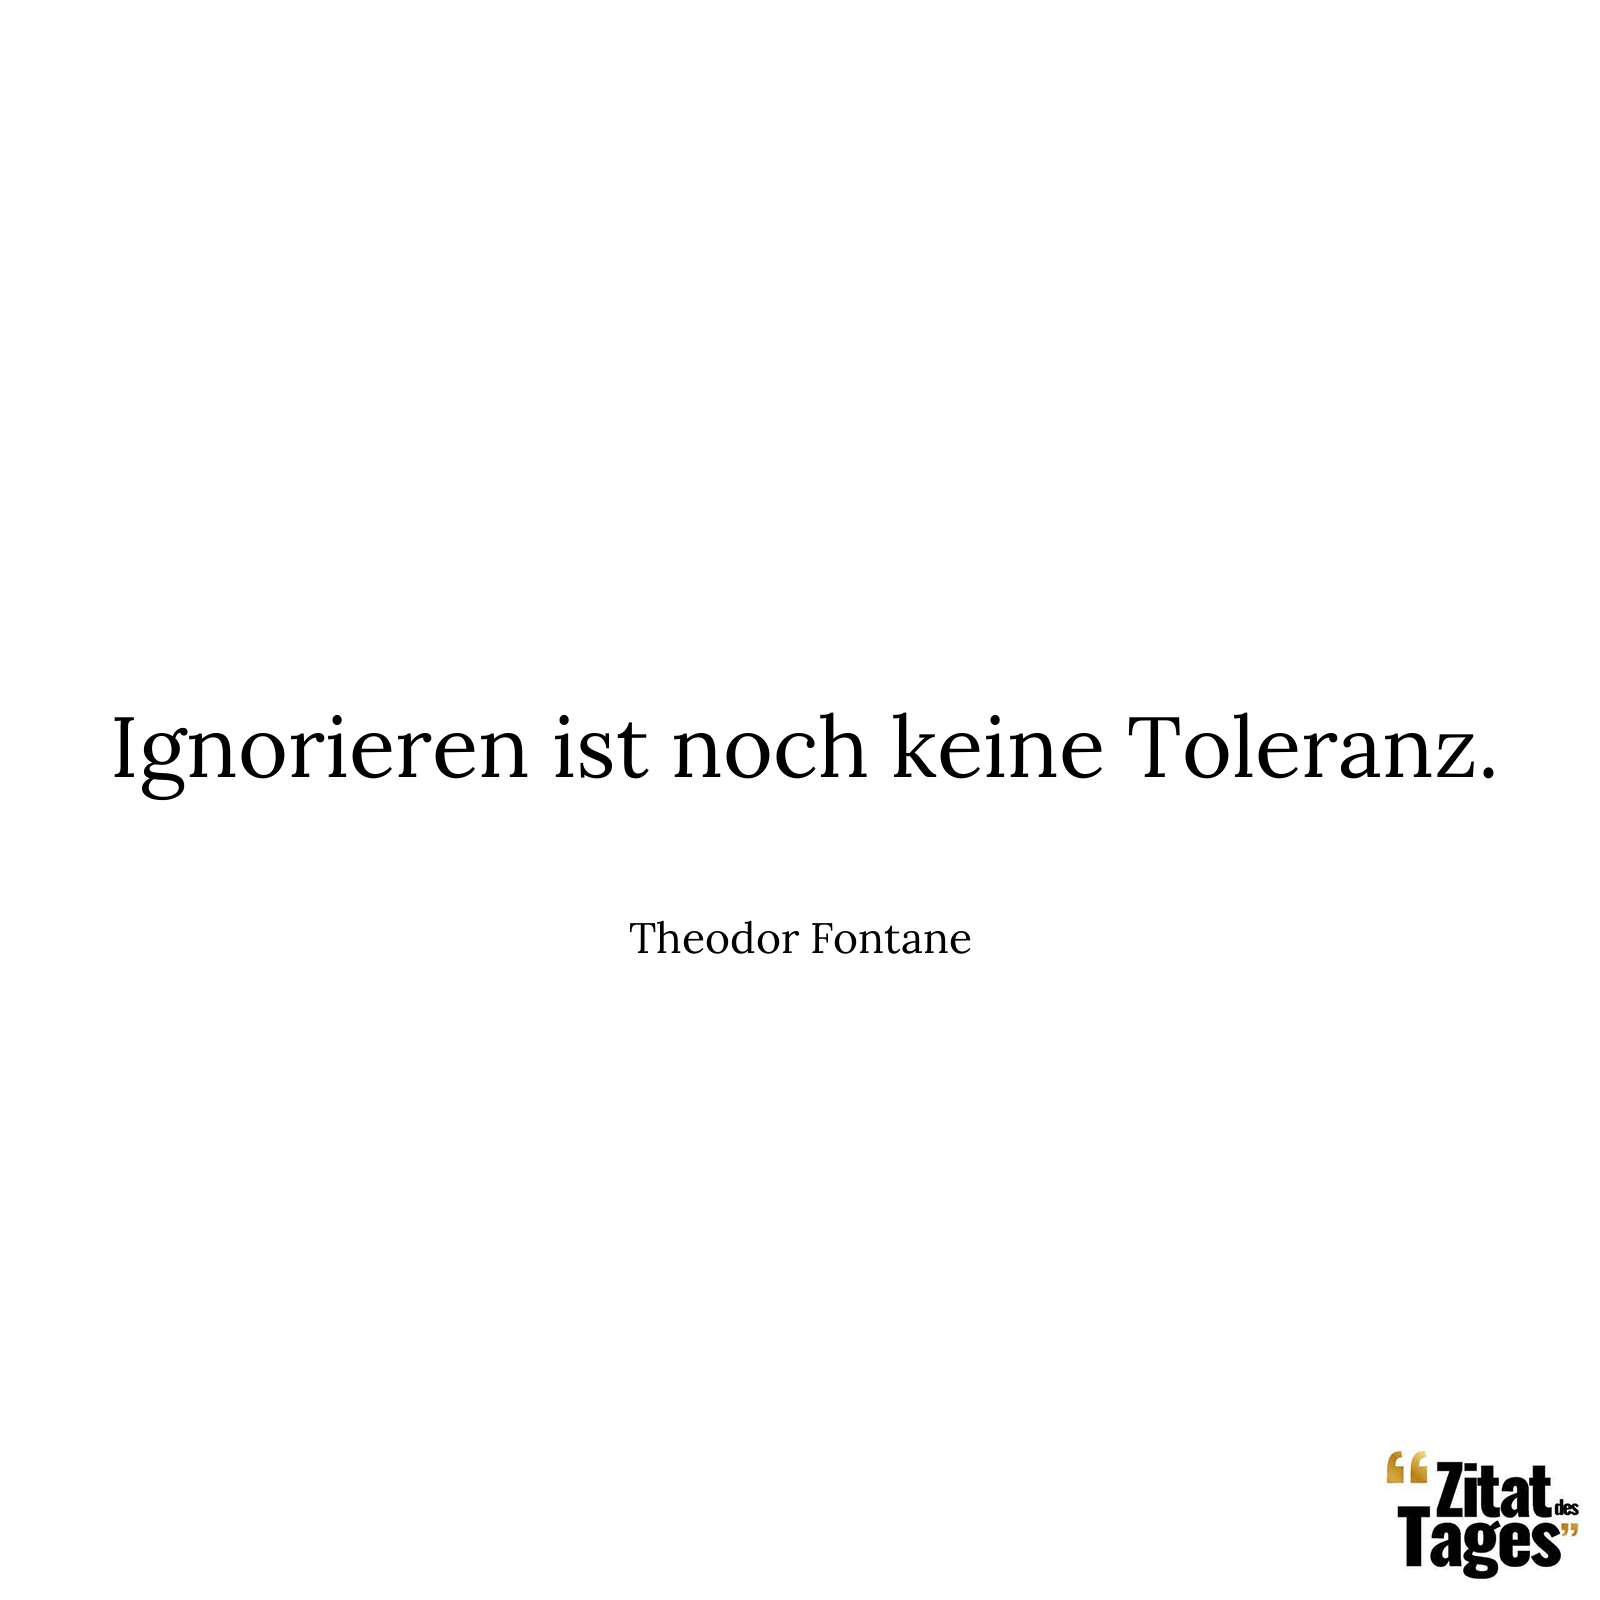 Ignorieren ist noch keine Toleranz. - Theodor Fontane